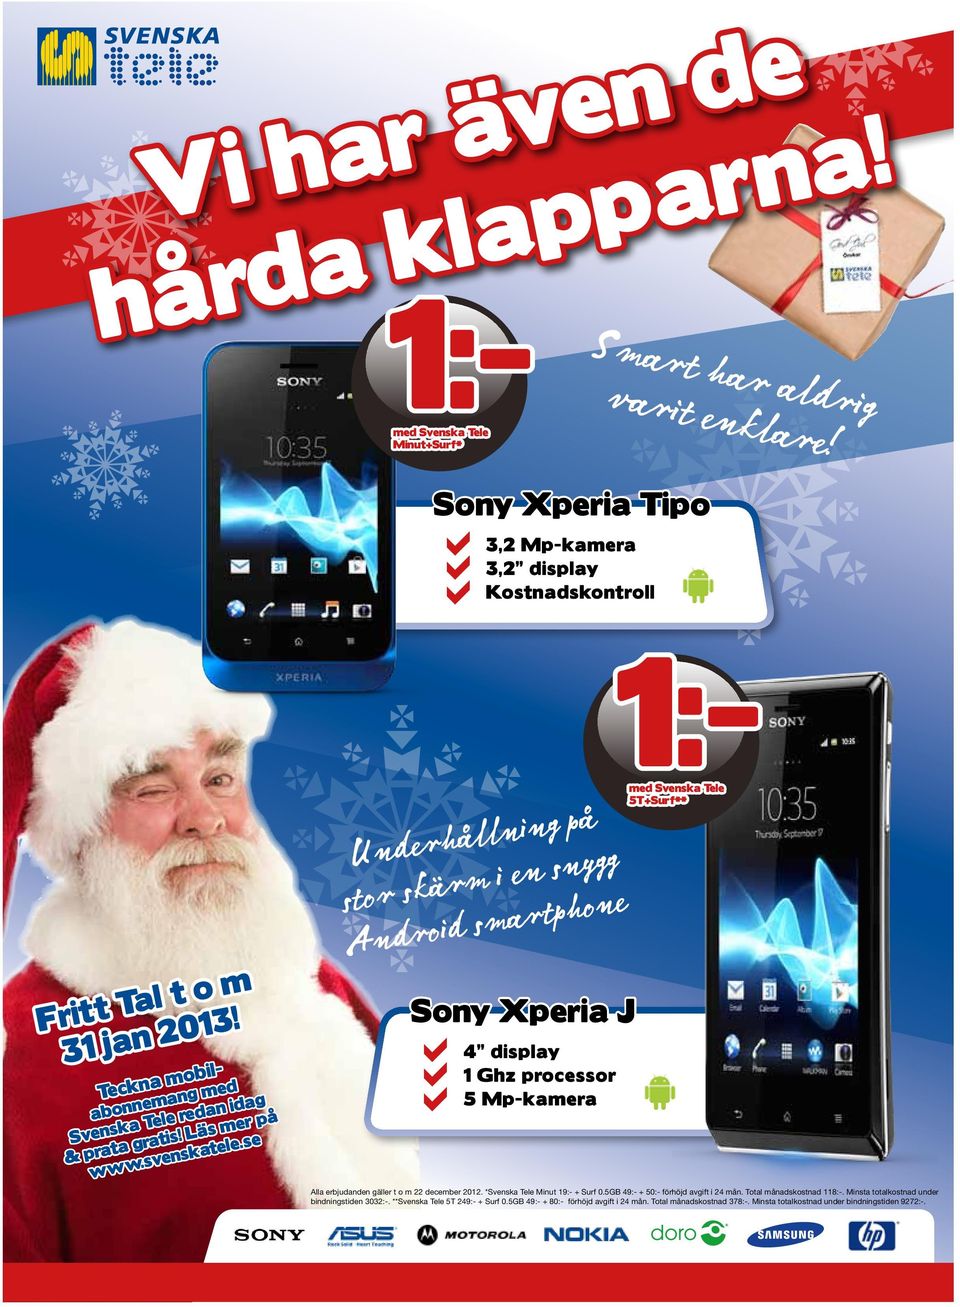 se Underhållning på stor skärm i en snygg Android smartphone Sony Xperia J a 4 display 1 Ghz processor 5 Mp-kamera 1:- med Svenska Tele 5T+Surf** Alla erbjudanden gäller t o m 22 december 2012.